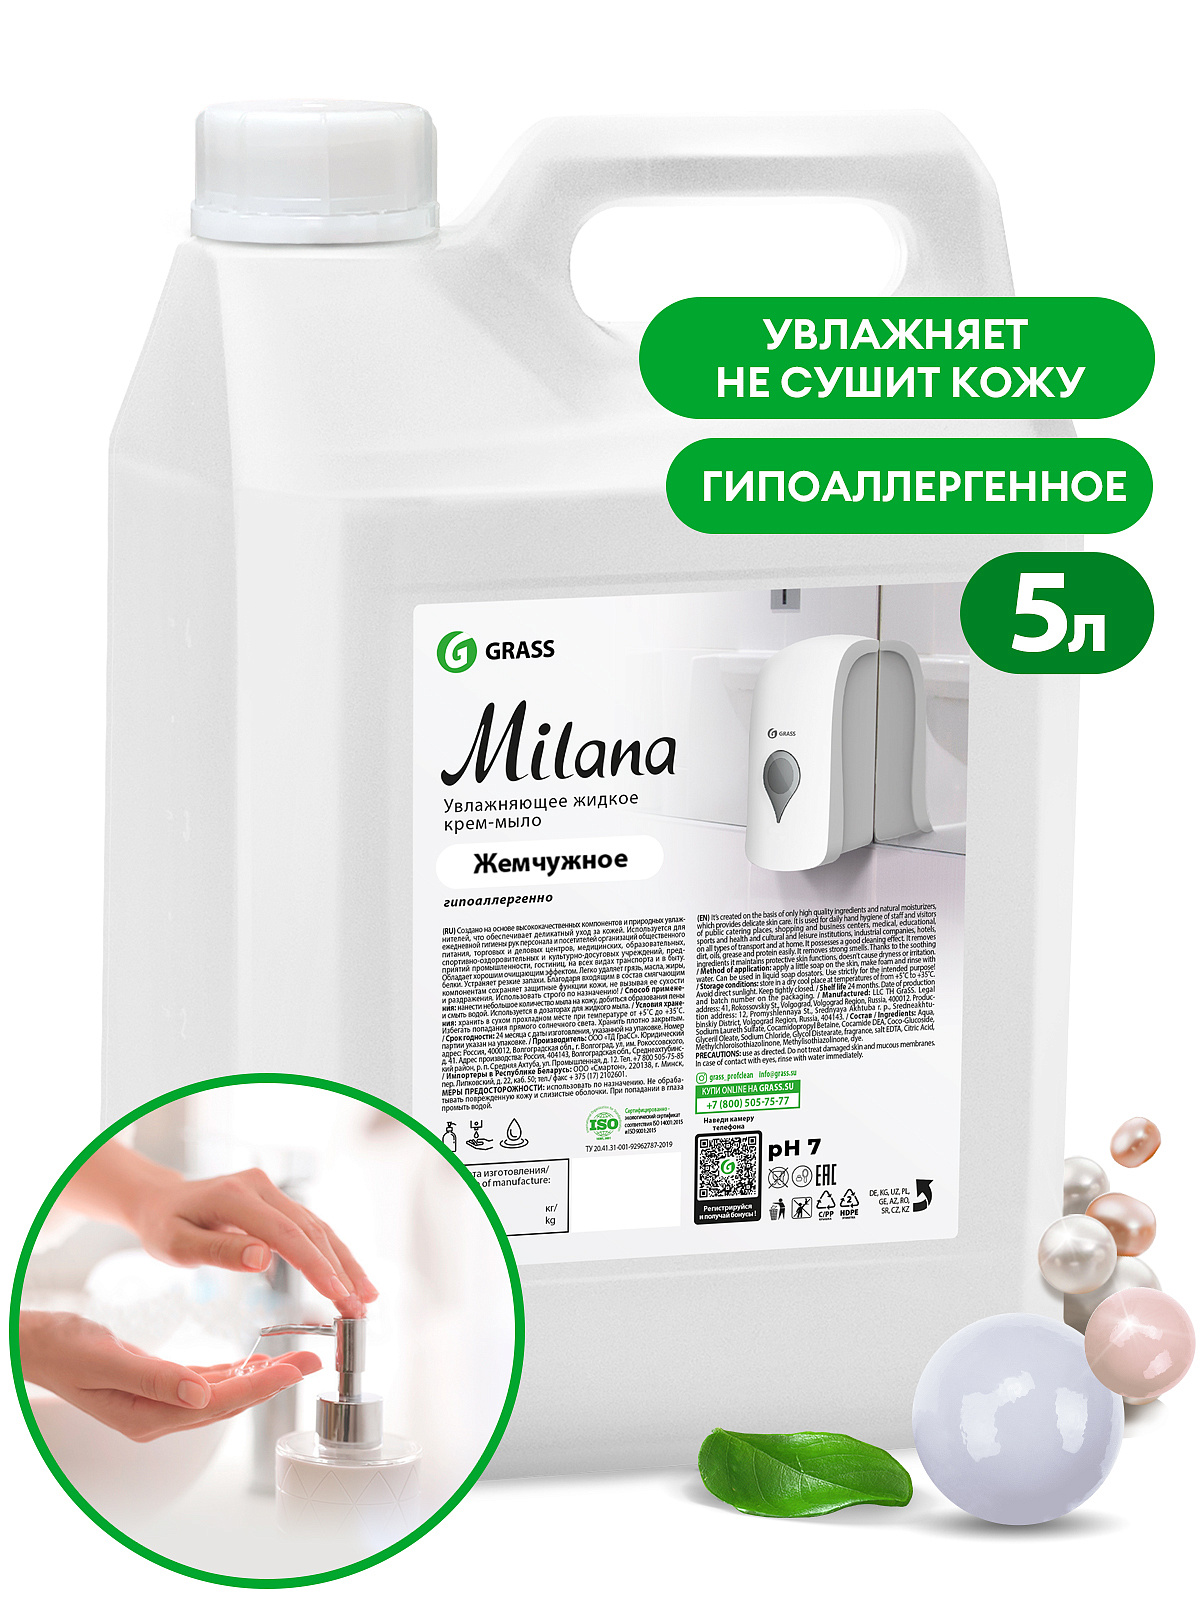 5 Жидкое крем-мыло "Milana" жемчужное  (канистра 5 кг)